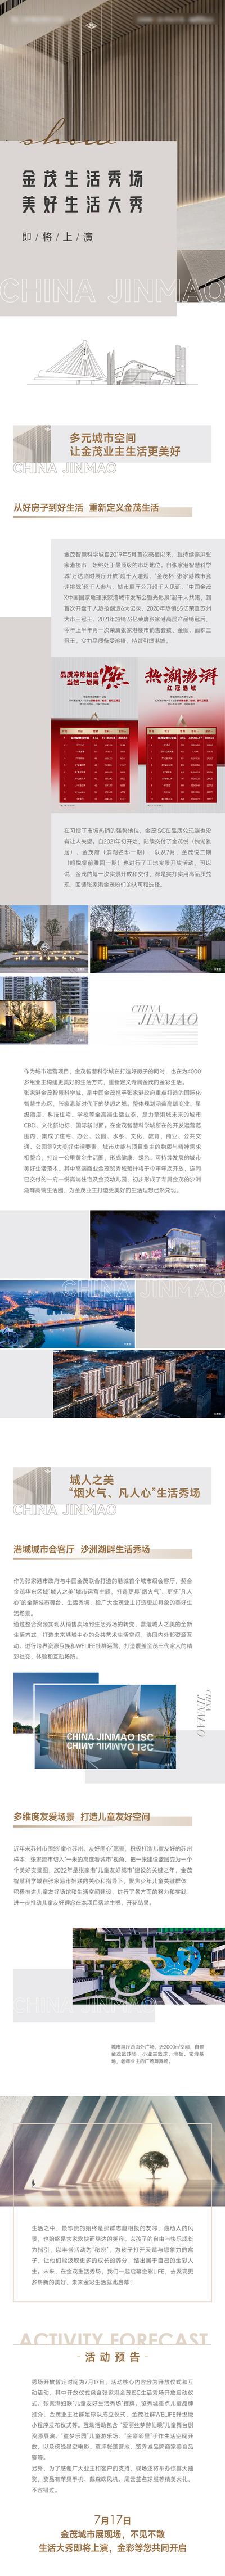 南门网 广告 海报 地产 长图 推文 商业 详情 介绍